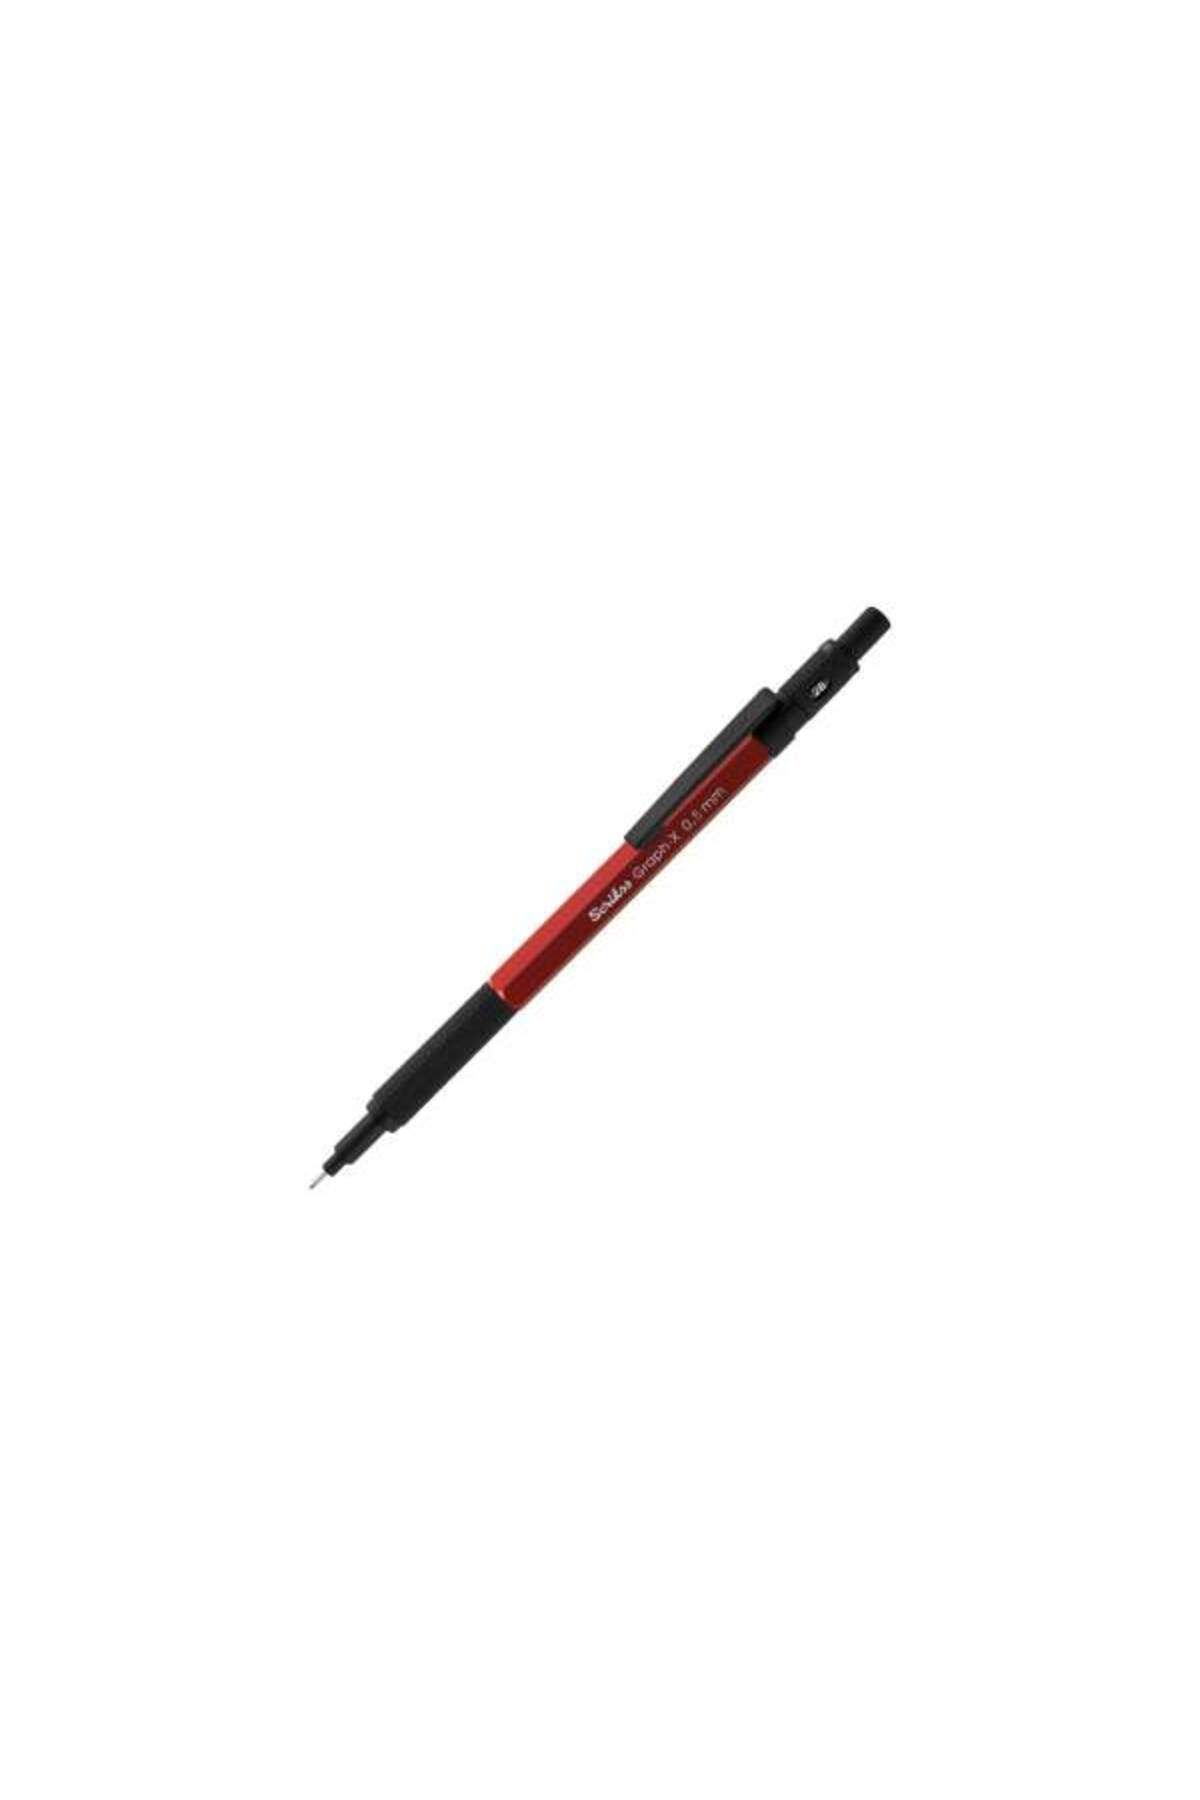 Scrikss Graph-x Versatil Kalem 0.5mm - Kırmızı